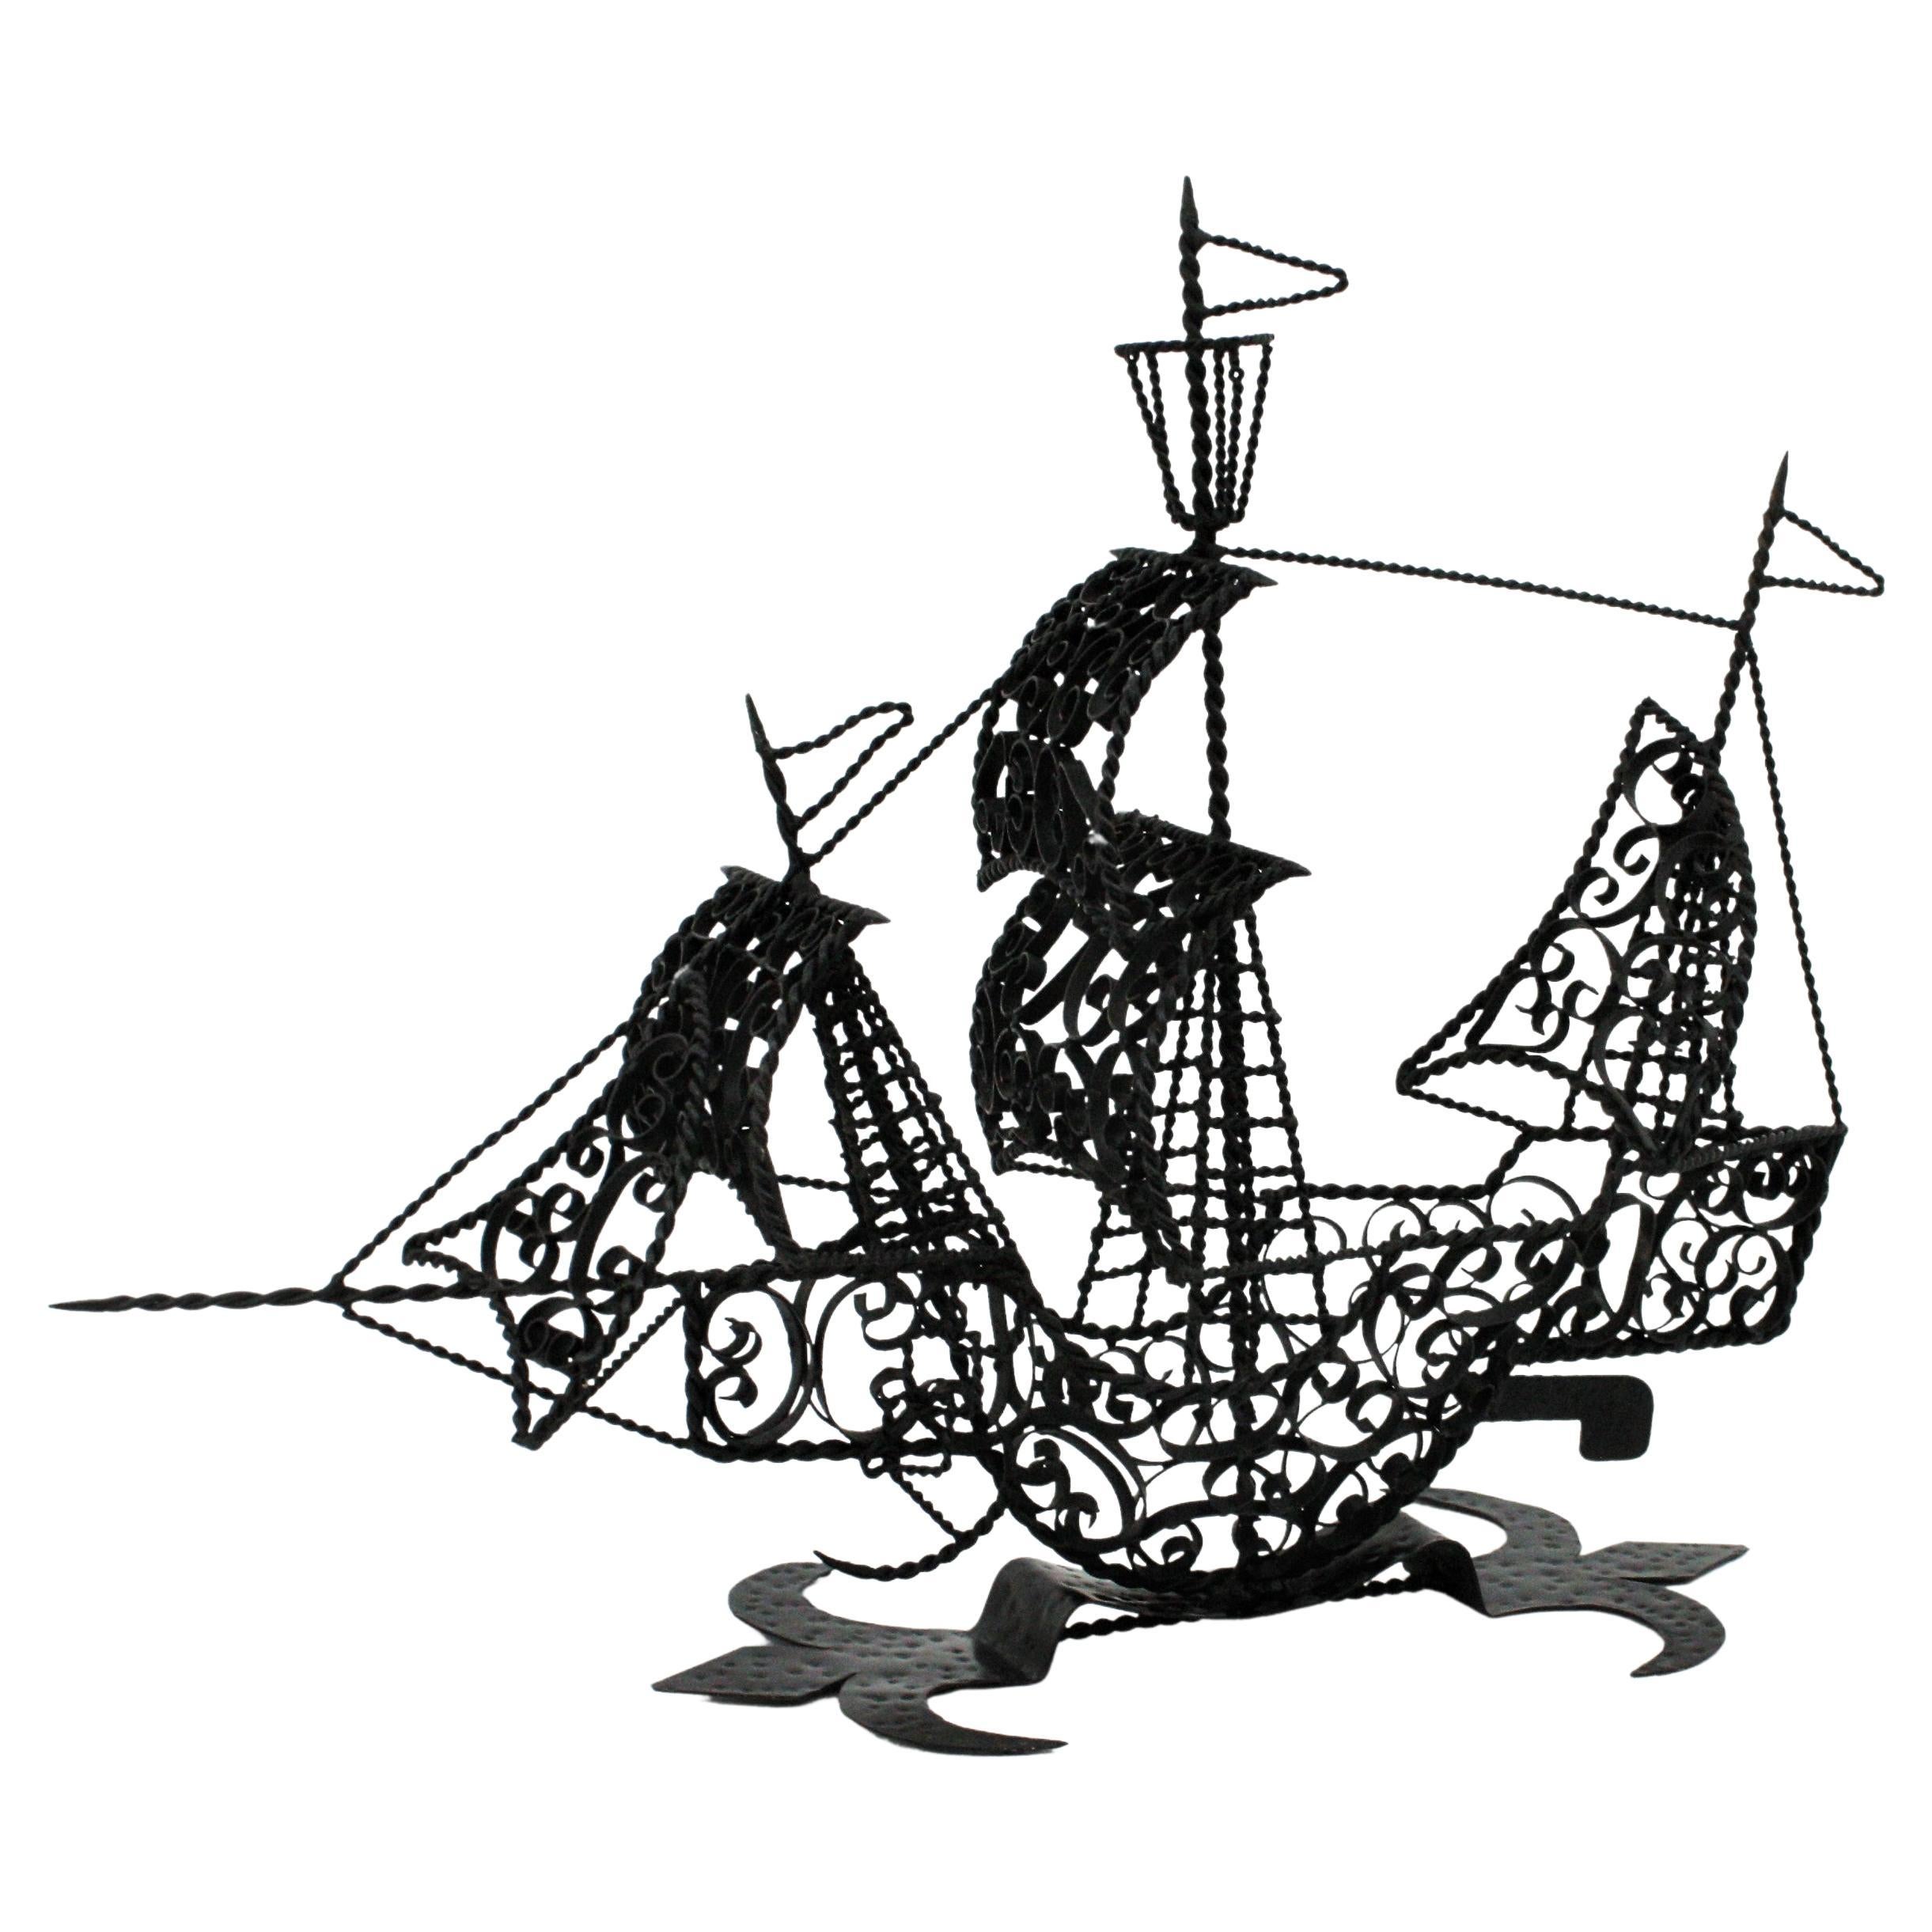 Schmiedeeiserne spanische Karavelle / Galeone Skulptur. Spanien, 1940er-1950er Jahre
Diese Segelschiffskulptur wurde Mitte des 20. Jahrhunderts in Spanien in Handarbeit hergestellt. Das Schiff hat ein reichhaltiges Schnörkelwerk, Eisenarbeiten mit